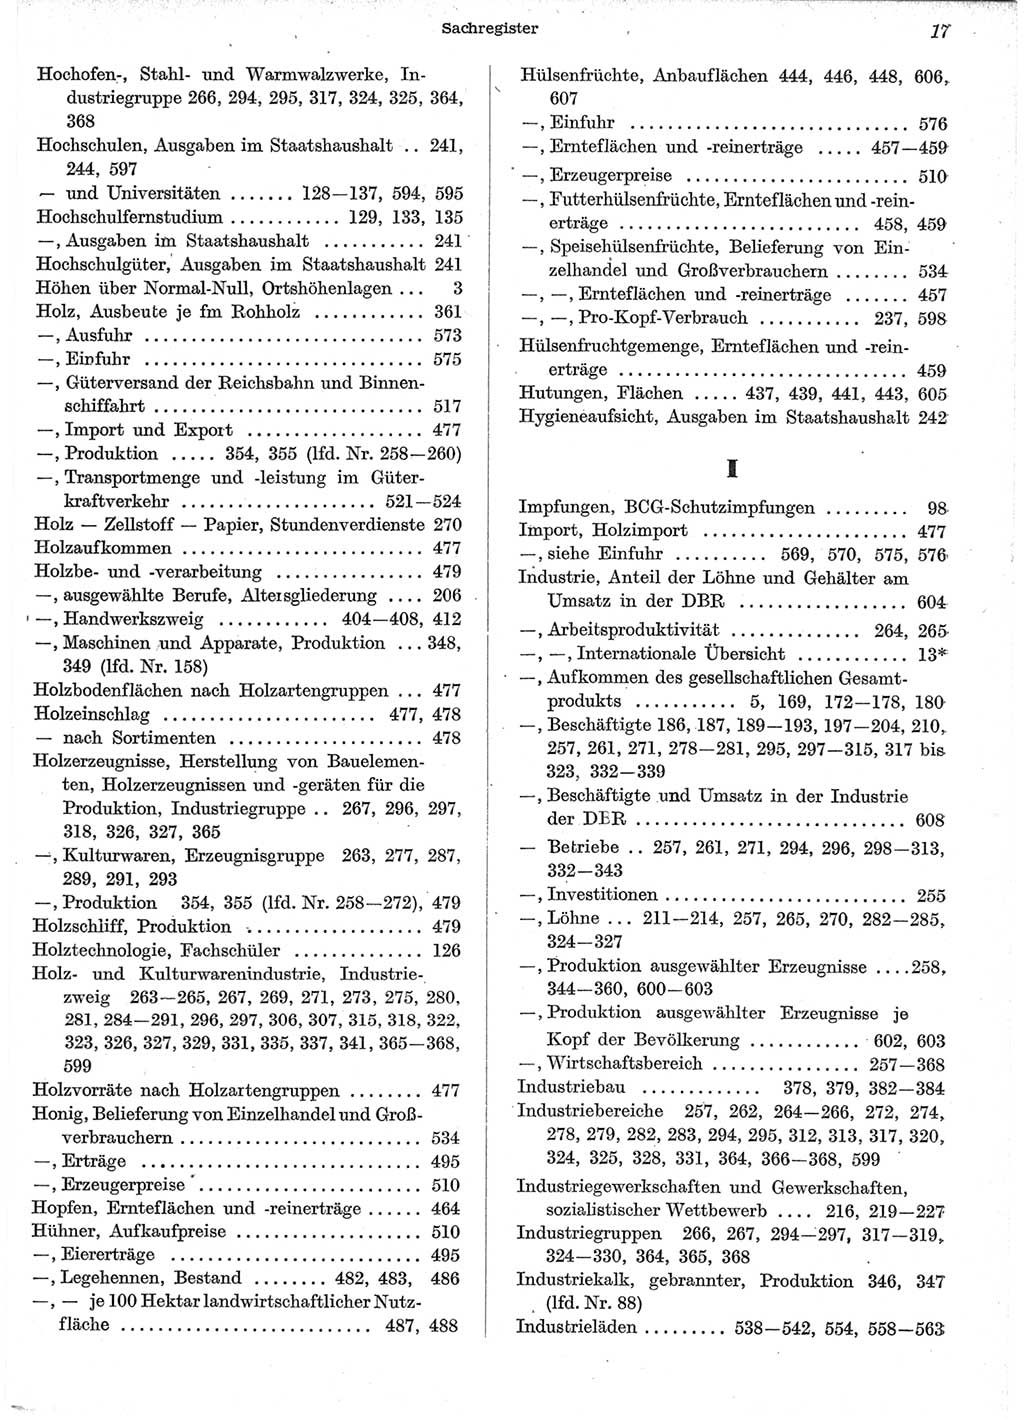 Statistisches Jahrbuch der Deutschen Demokratischen Republik (DDR) 1958, Seite 17 (Stat. Jb. DDR 1958, S. 17)